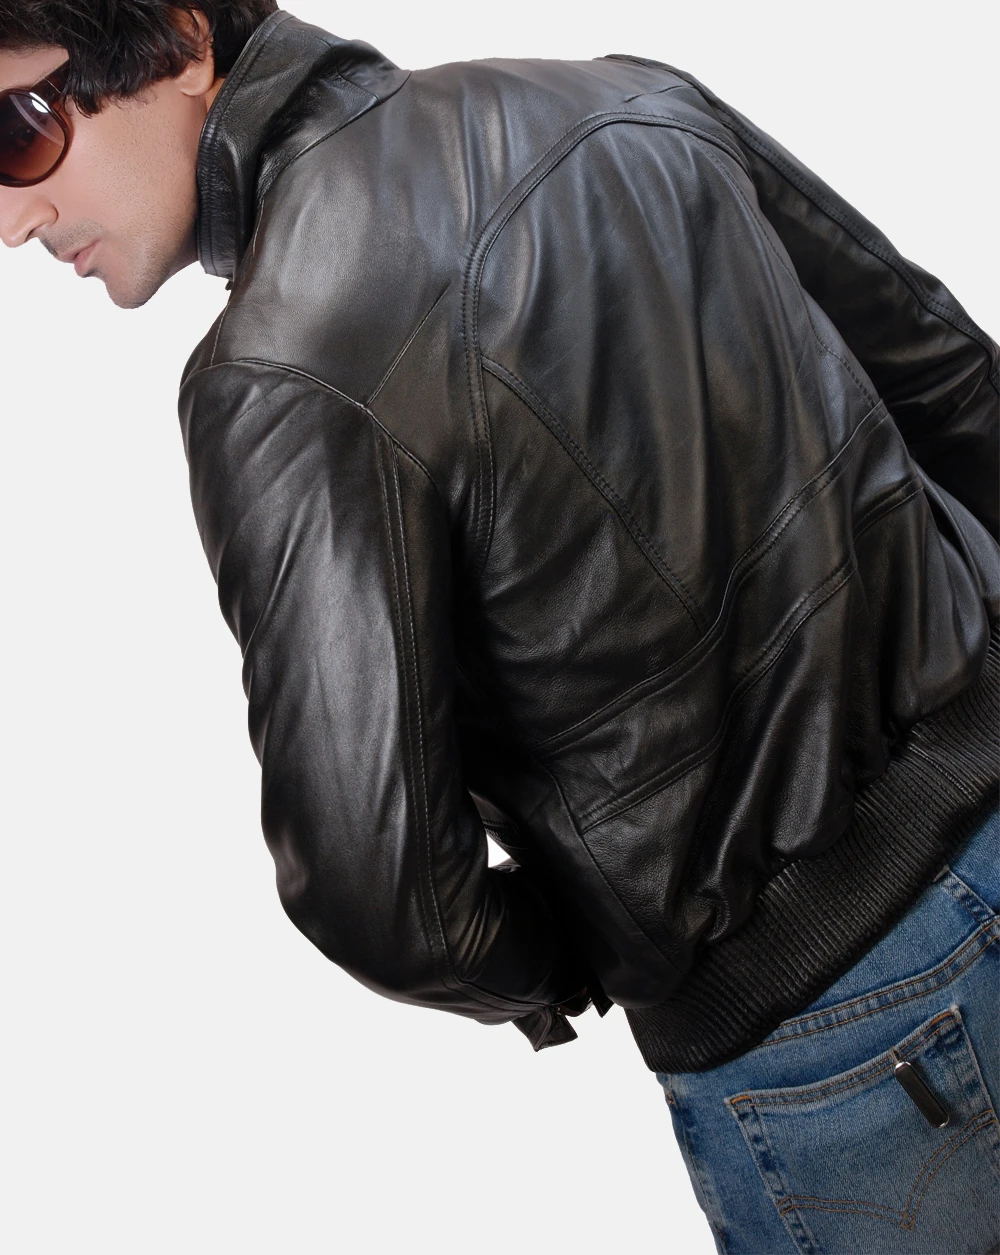 Jbross Biker Leather Jacket